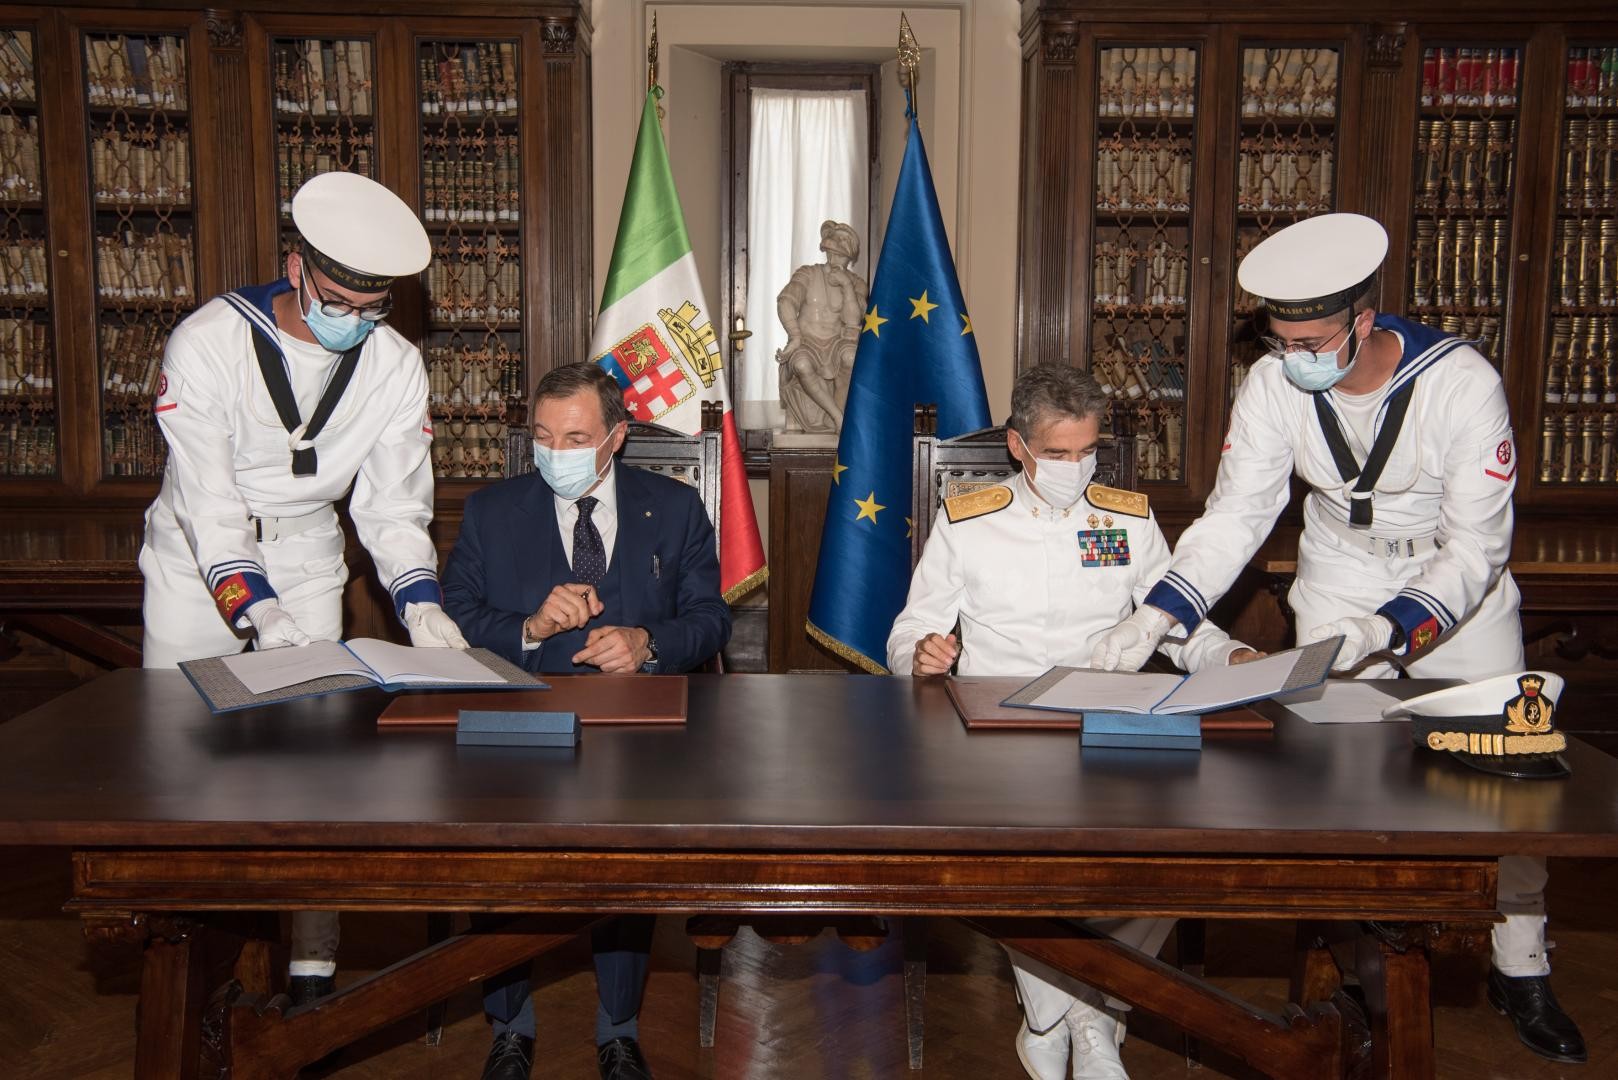 Accordo di collaborazione tra Marina Militare e Ministero dello Sviluppo Economico